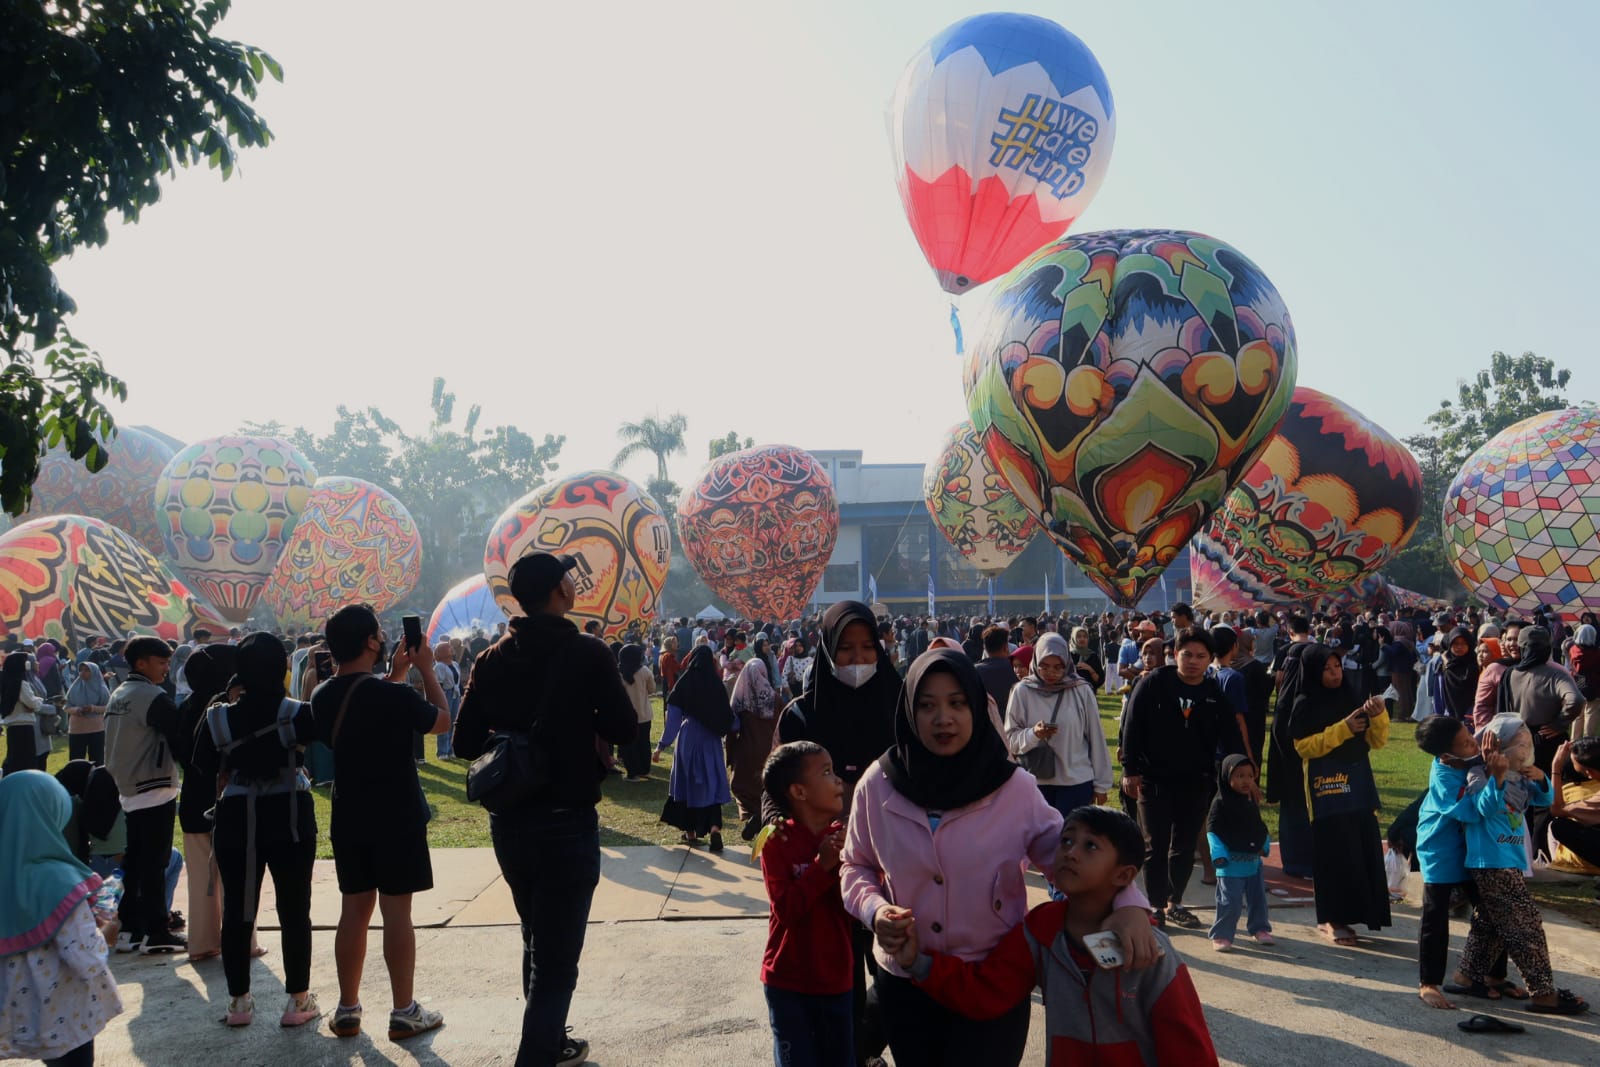 Festival Balon Udara Hiasi Langit Universitas Muhammadiyah Purwokerto 